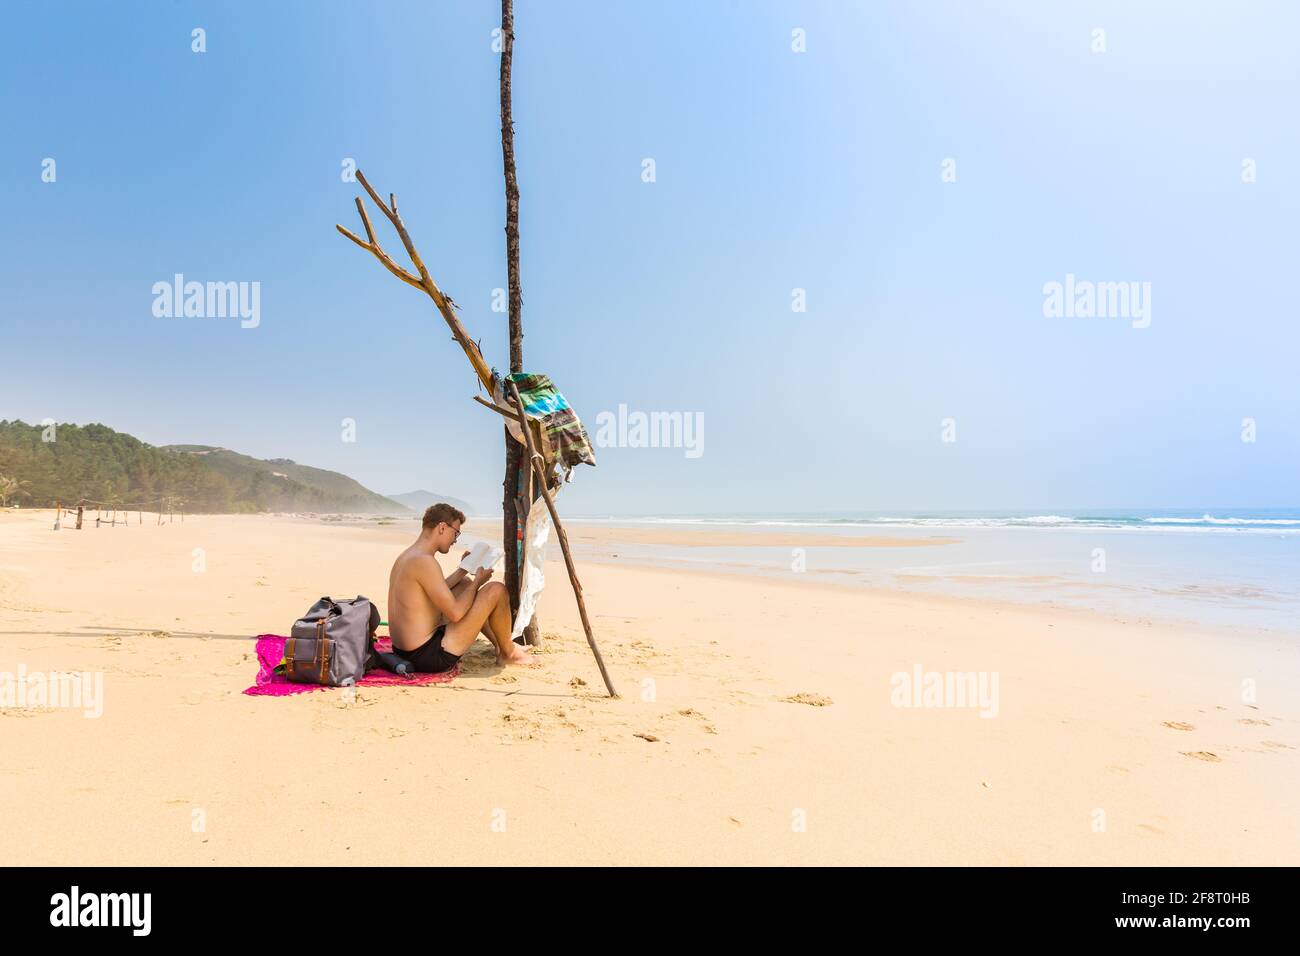 Schöner Mann am Strand von Quan Lan - Bai Bien - Insel, Bai TU Long Bay, Vietnam. Landschaftsfoto am Meer, aufgenommen in Südostasien, Ha Long-Gebiet. Stockfoto